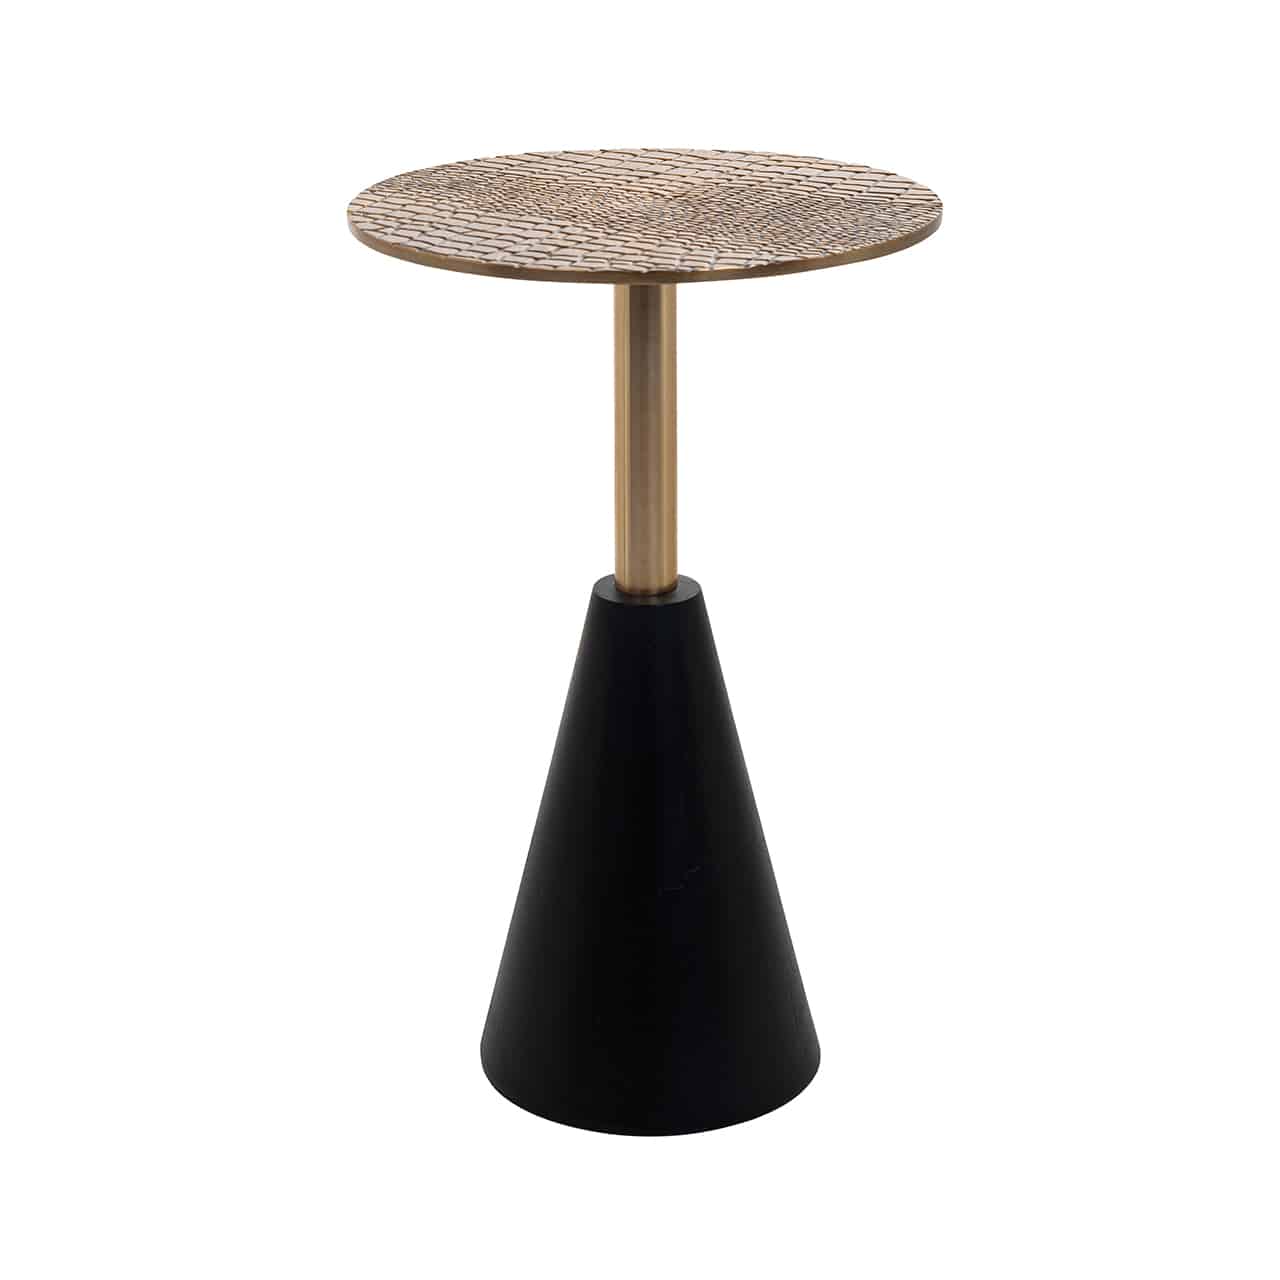 Beistelltisch mit einem schmalen, kegelförmigen Fuß in schwarz, darauf ein goldenes Metallrohr mit aufgesetzter runder Tischplatte in gehämmertem Gold.